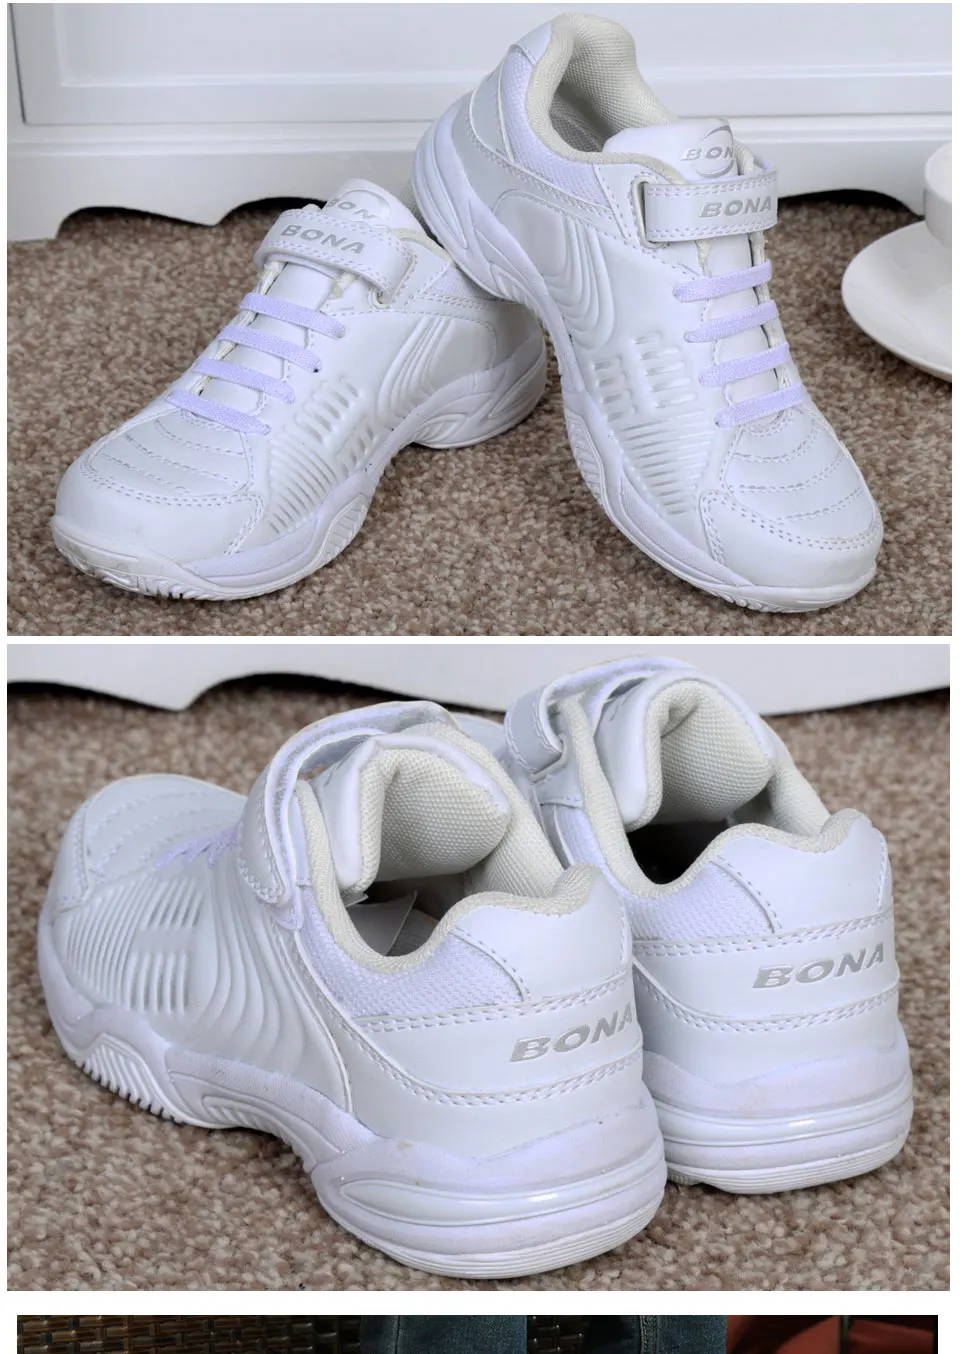 BONA/ популярный стиль; детская повседневная обувь на липучке; обувь для мальчиков; Цвет черный, белый; кроссовки для девочек; мягкая обувь; Быстрая